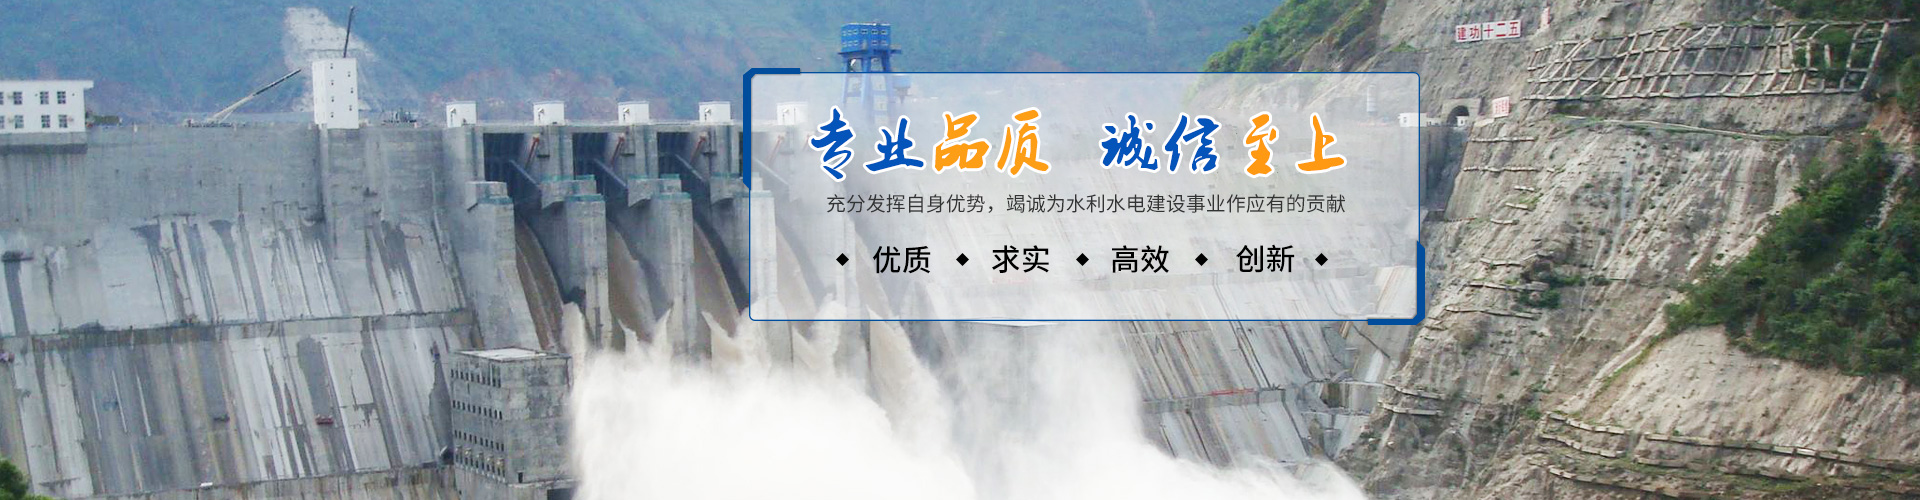 邵陽市水利水電建設有限公司|邵陽水利水電|邵陽水利水電工程|邵陽水利